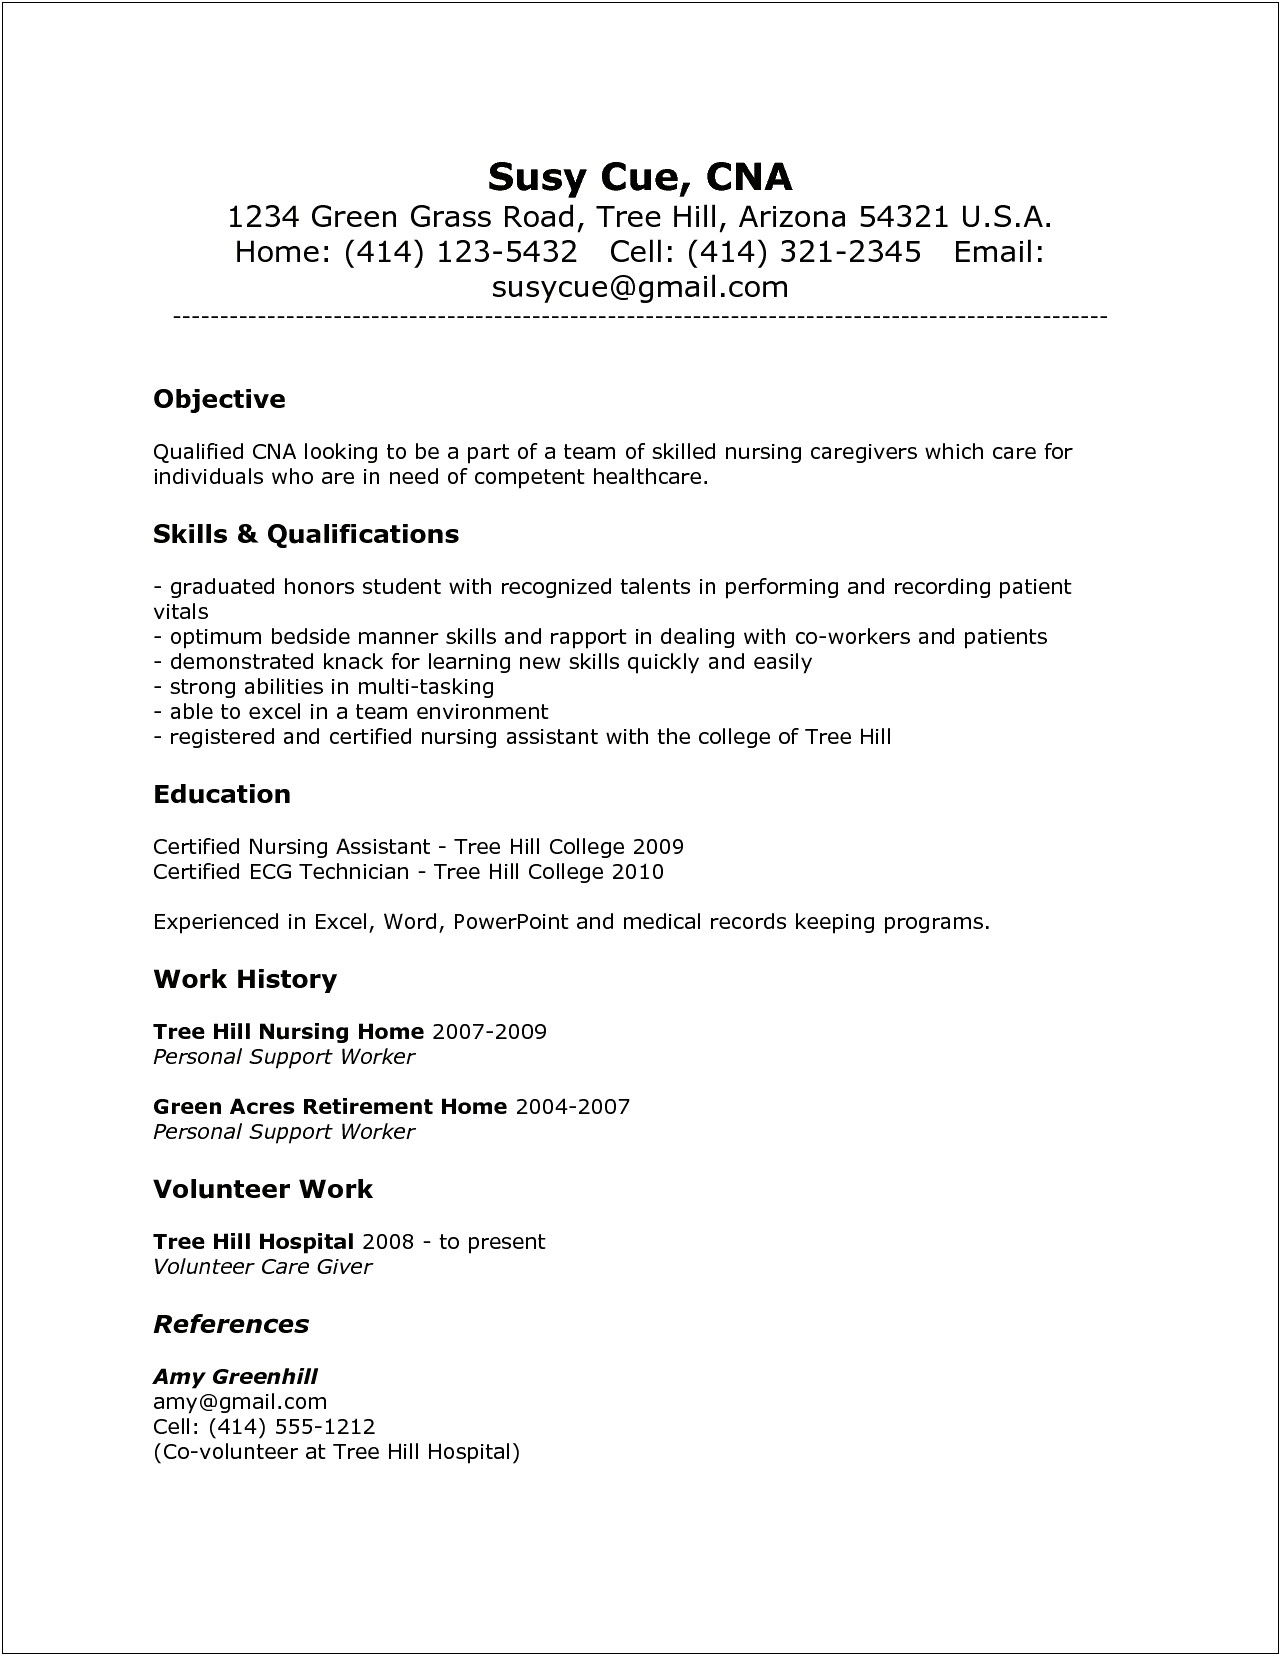 Job Summary For Cna Resume